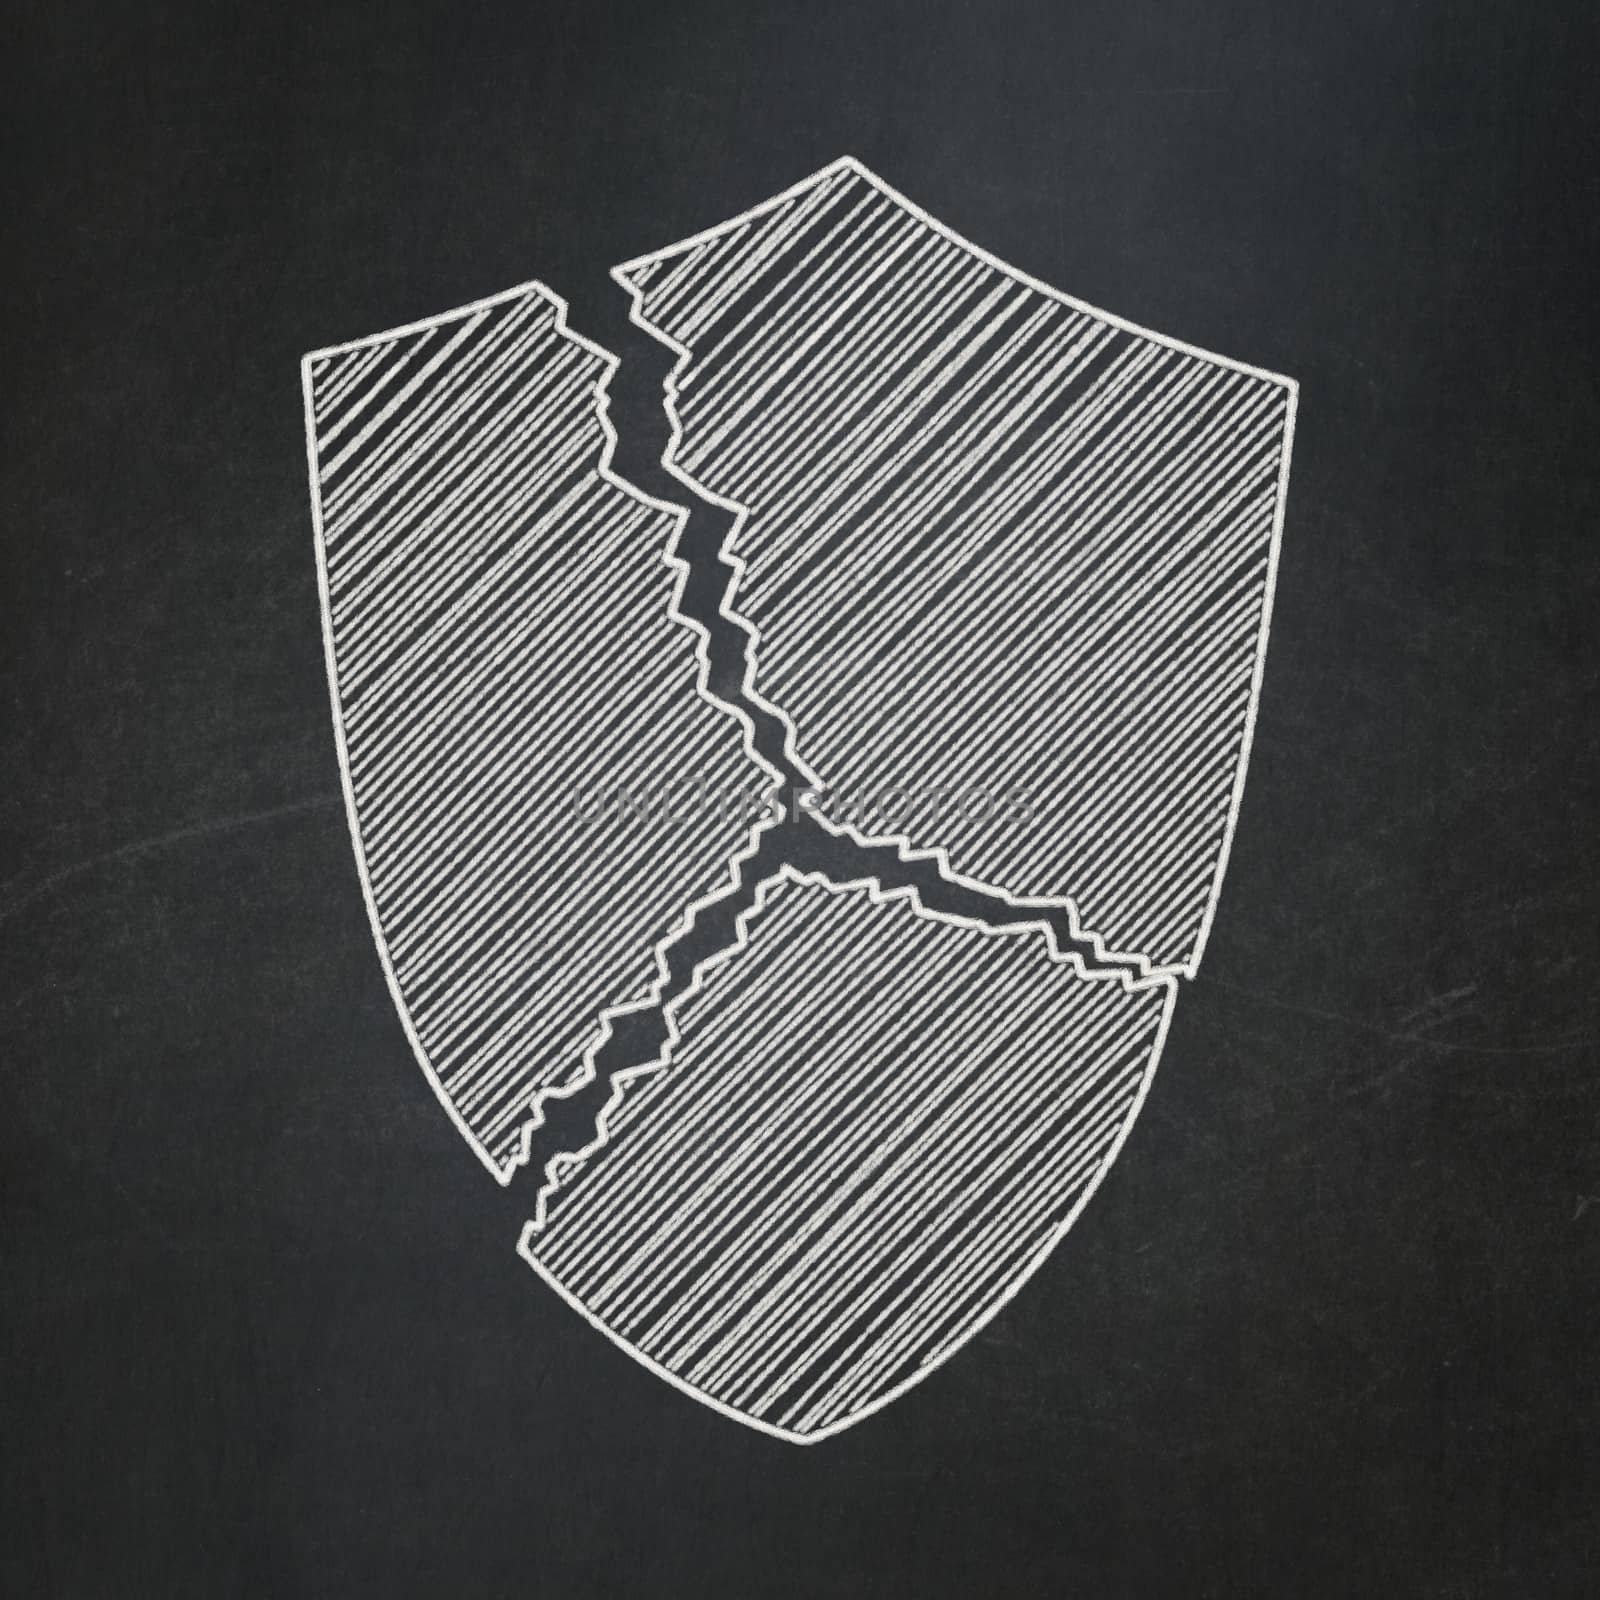 Privacy concept: Broken Shield on chalkboard background by maxkabakov